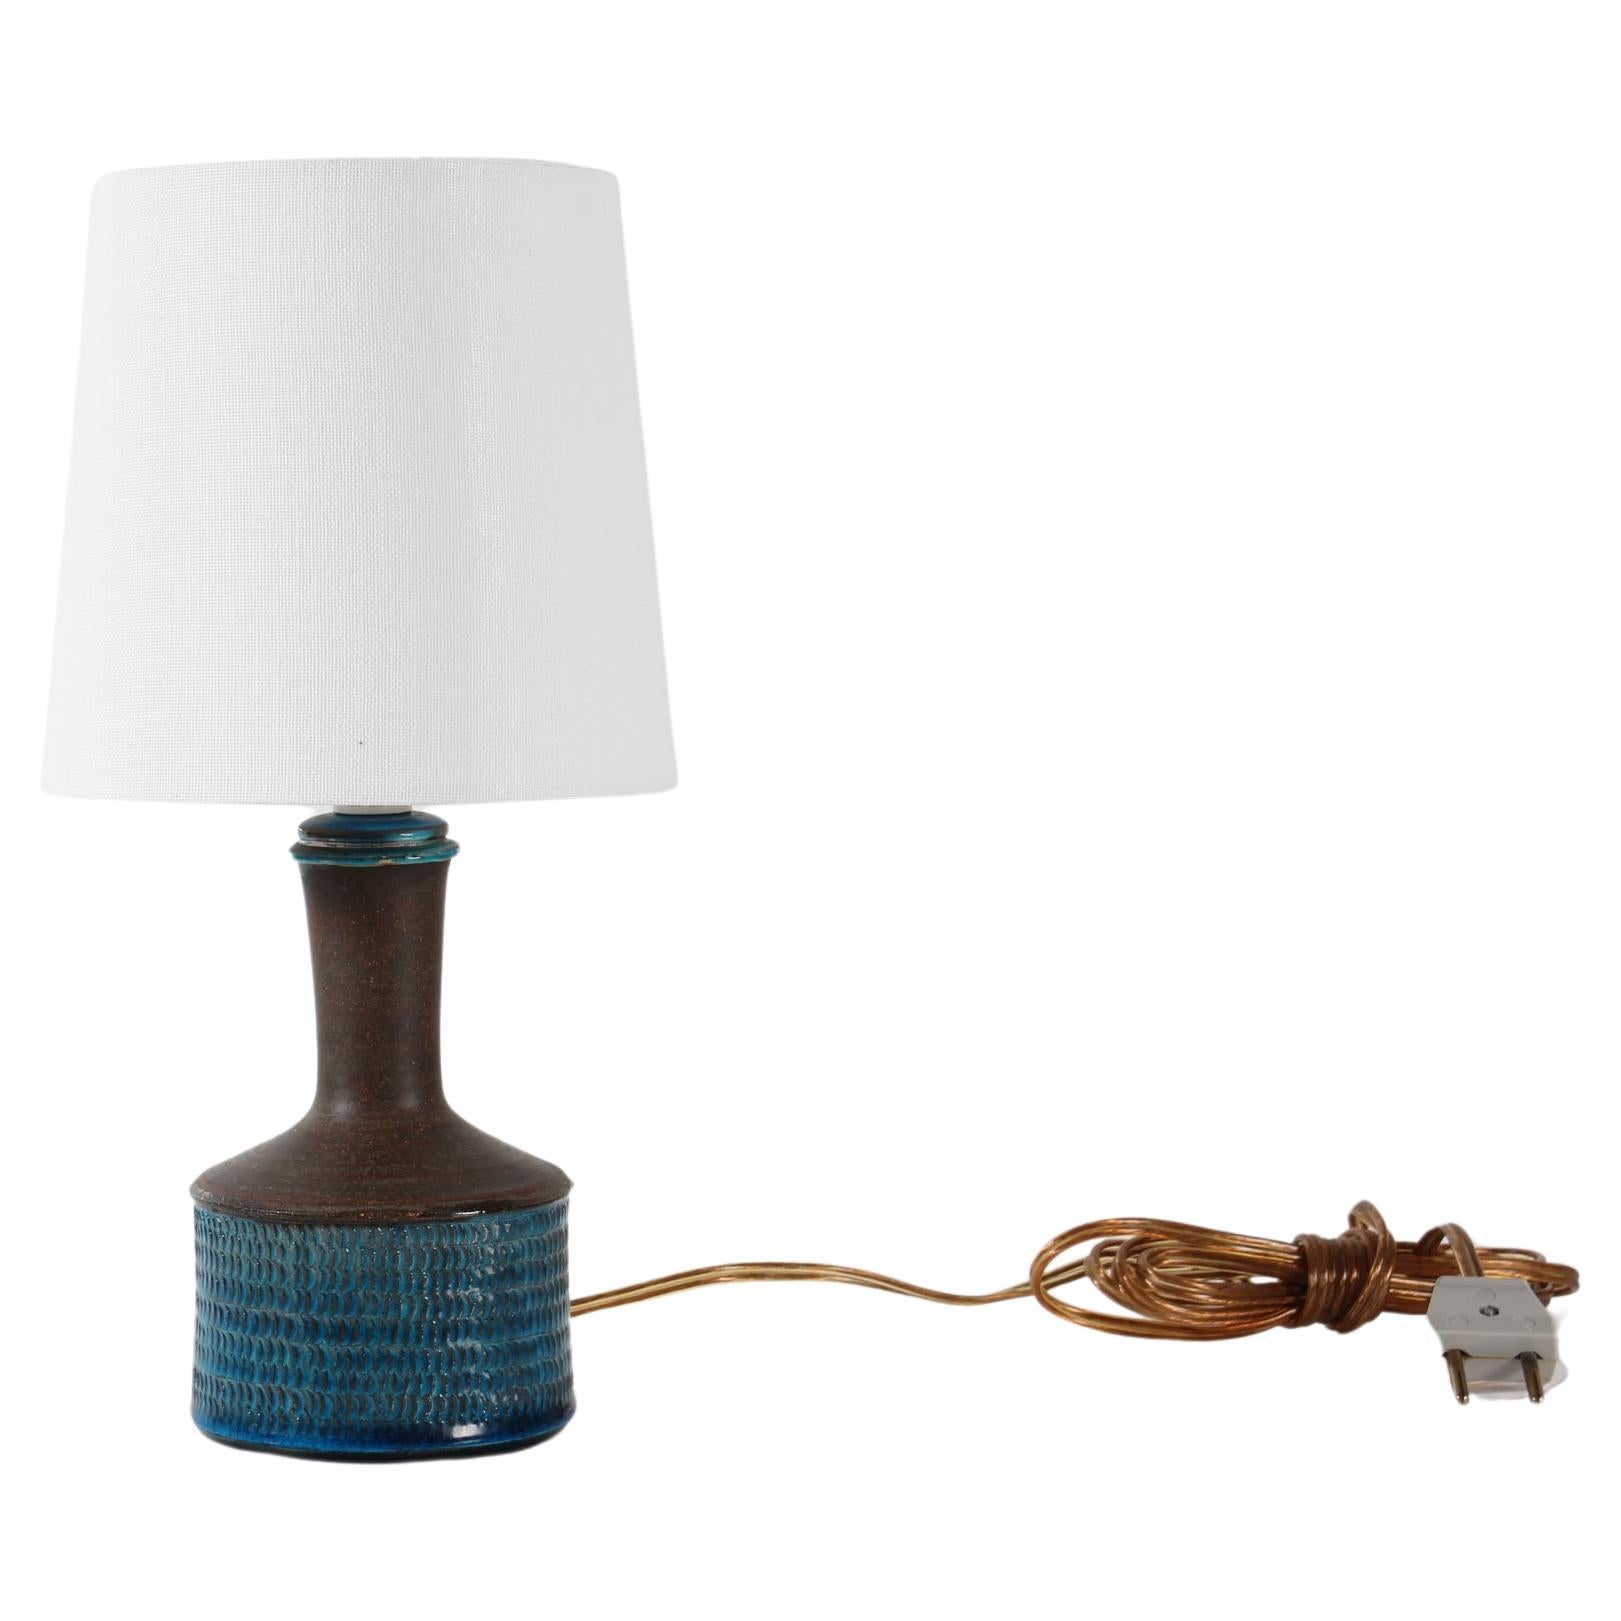 Petite lampe de table et de chevet danoise du milieu du siècle.
Il a été conçu par Nils Kähler pour l'atelier de céramique Kähler (HAK) au Danemark dans les années 1970.

Il est décoré d'une glaçure brillante bleu turquoise sur une surface